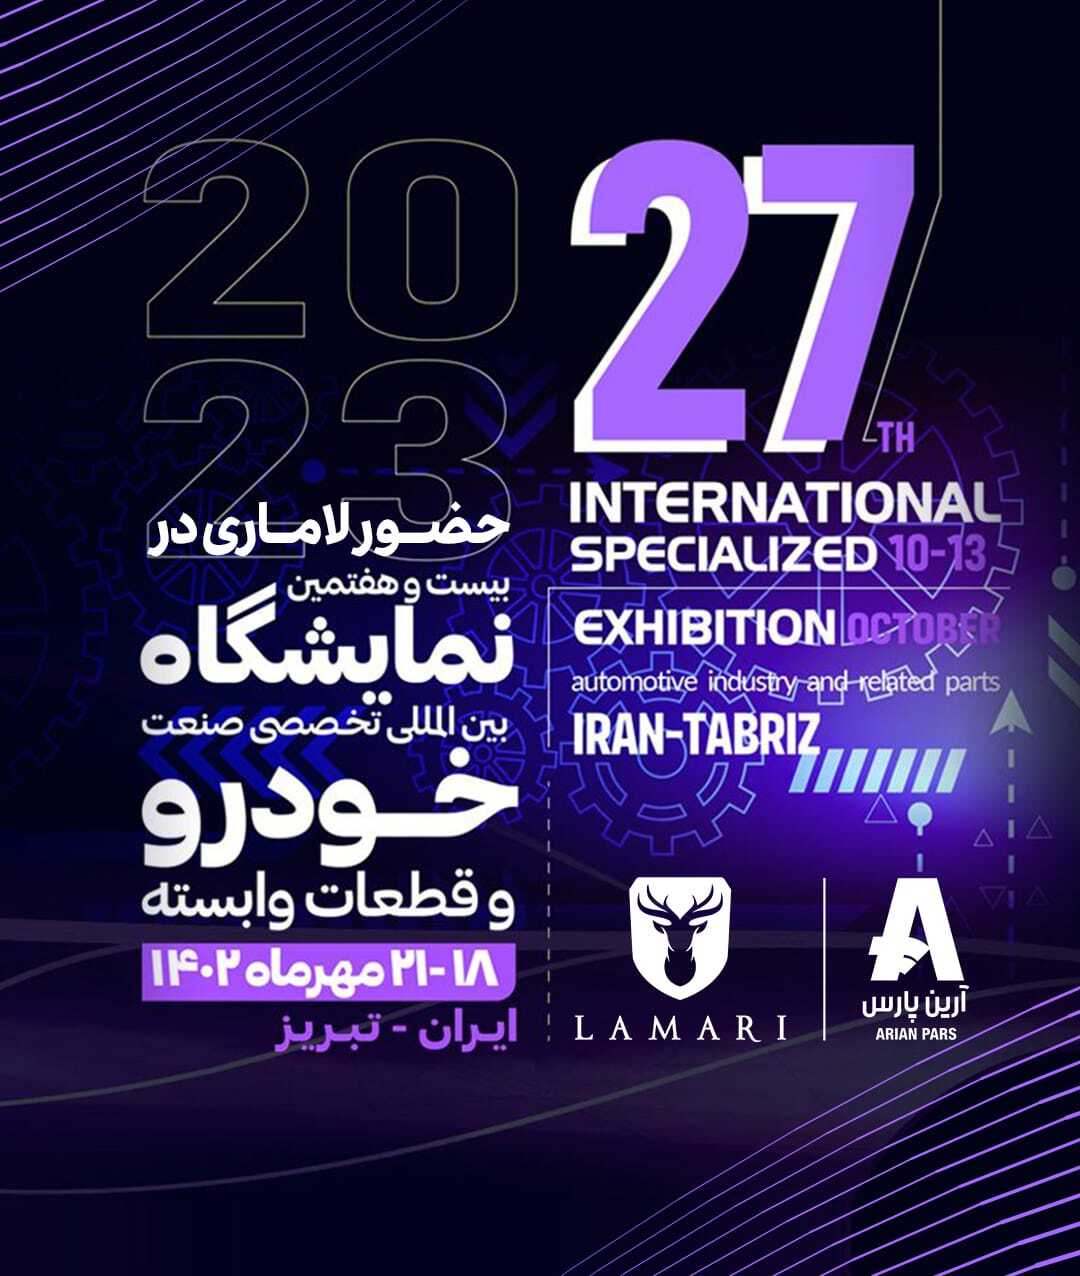 حضور پررنگ لاماری در نمایشگاه صنعت خودرو تبریز